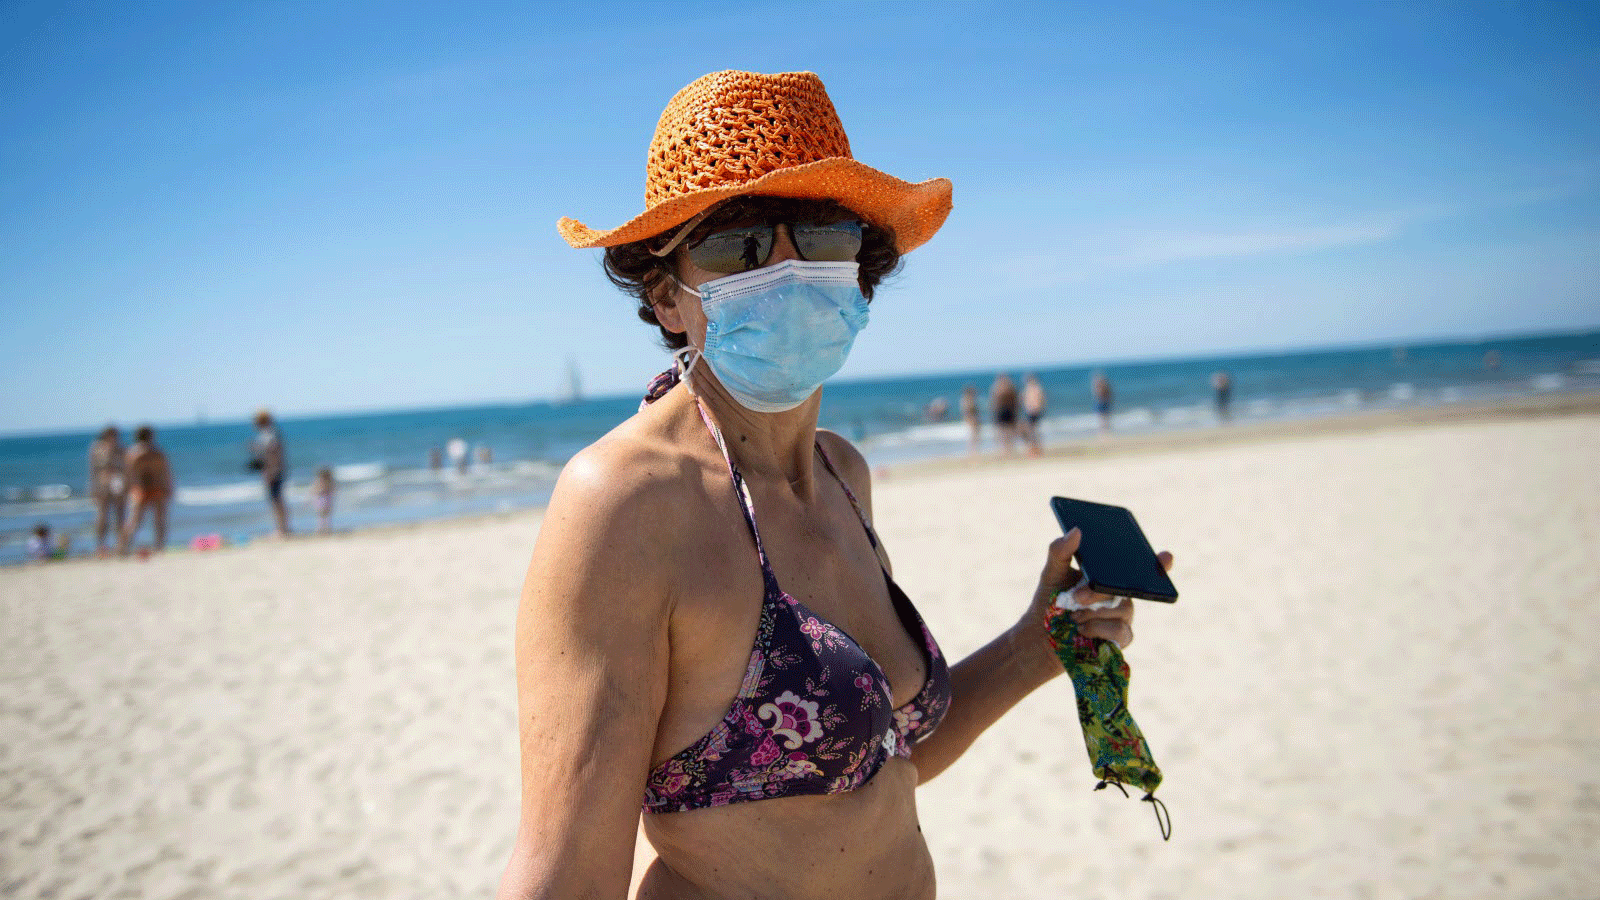 امرأة بلباس البحر ترتدي كمامة على شاطئ فرنسي